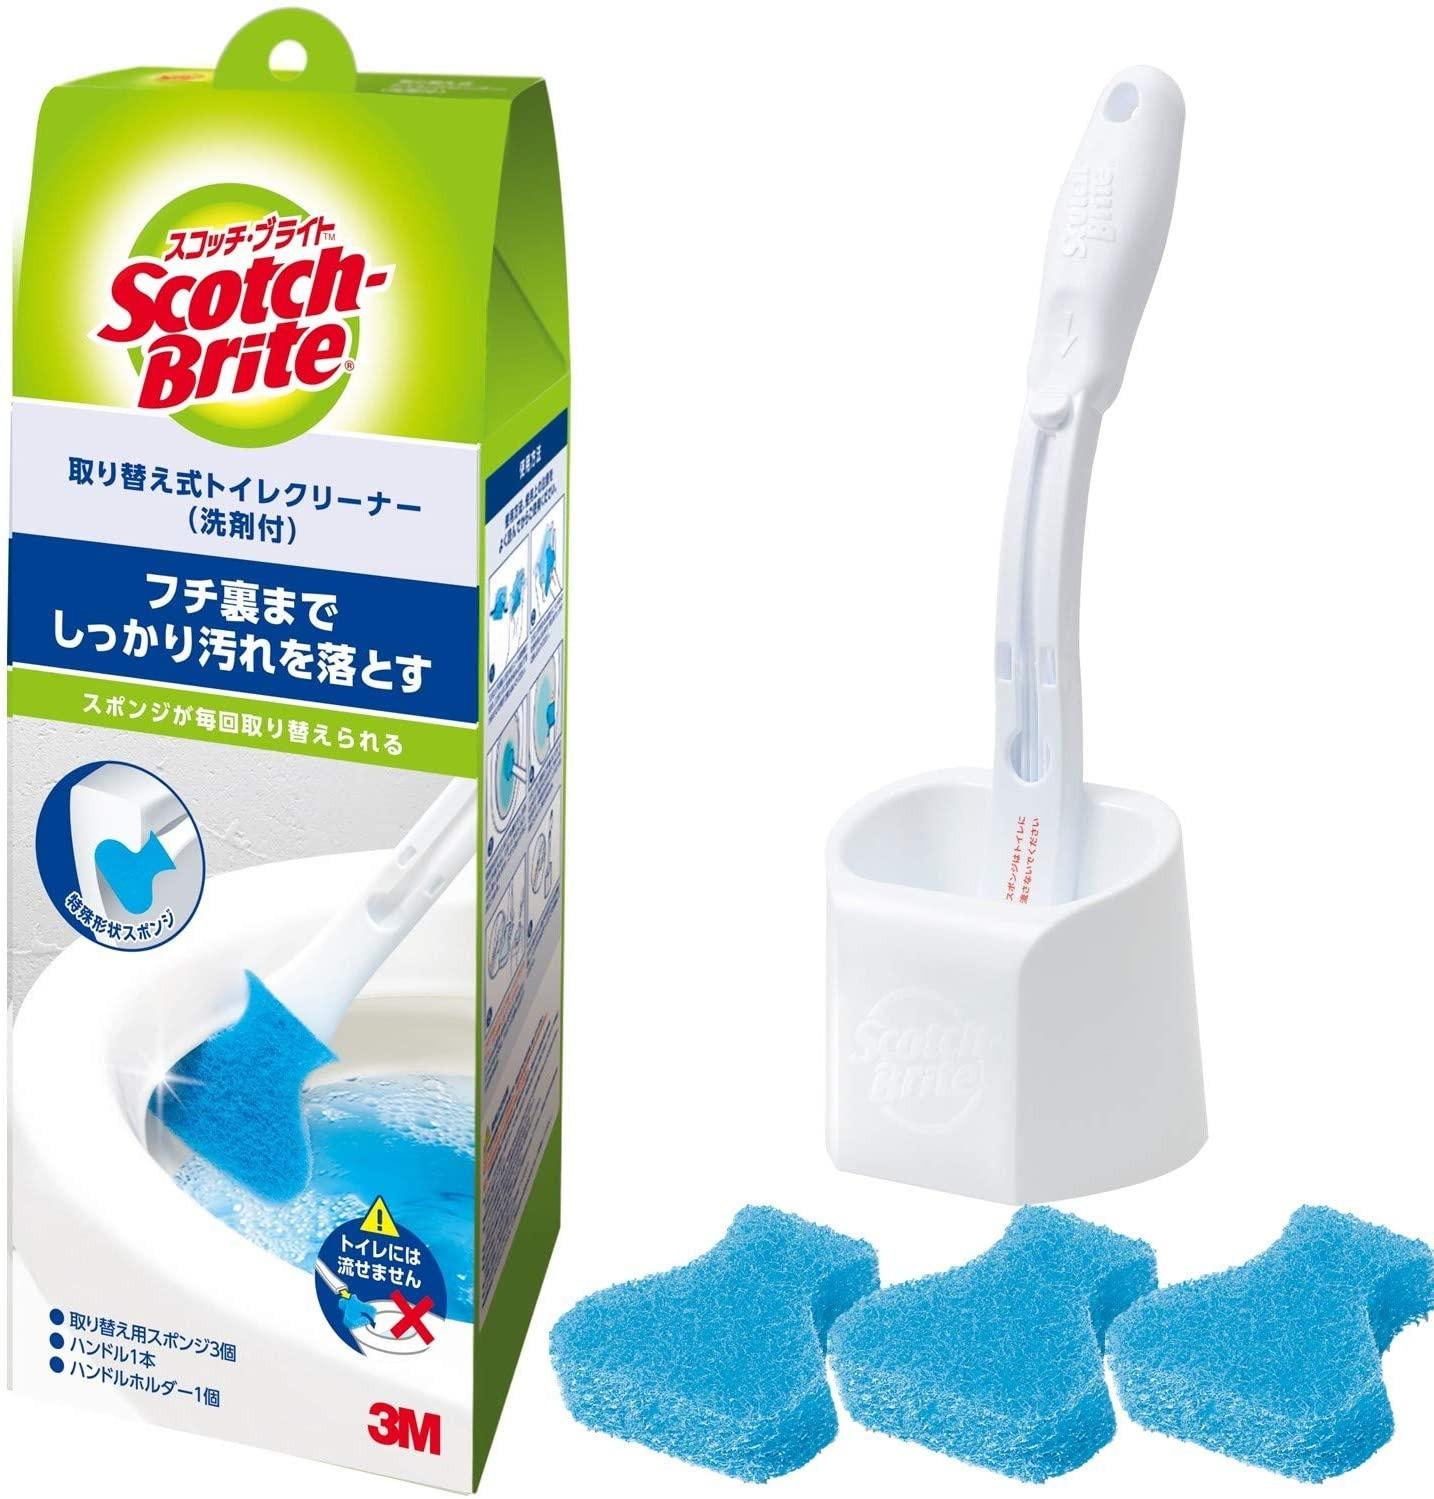 最新号掲載アイテム 3M トイレ掃除 トイレブラシ 使い捨て スポンジ 洗剤付 本体 取替3個 スコッチブライト